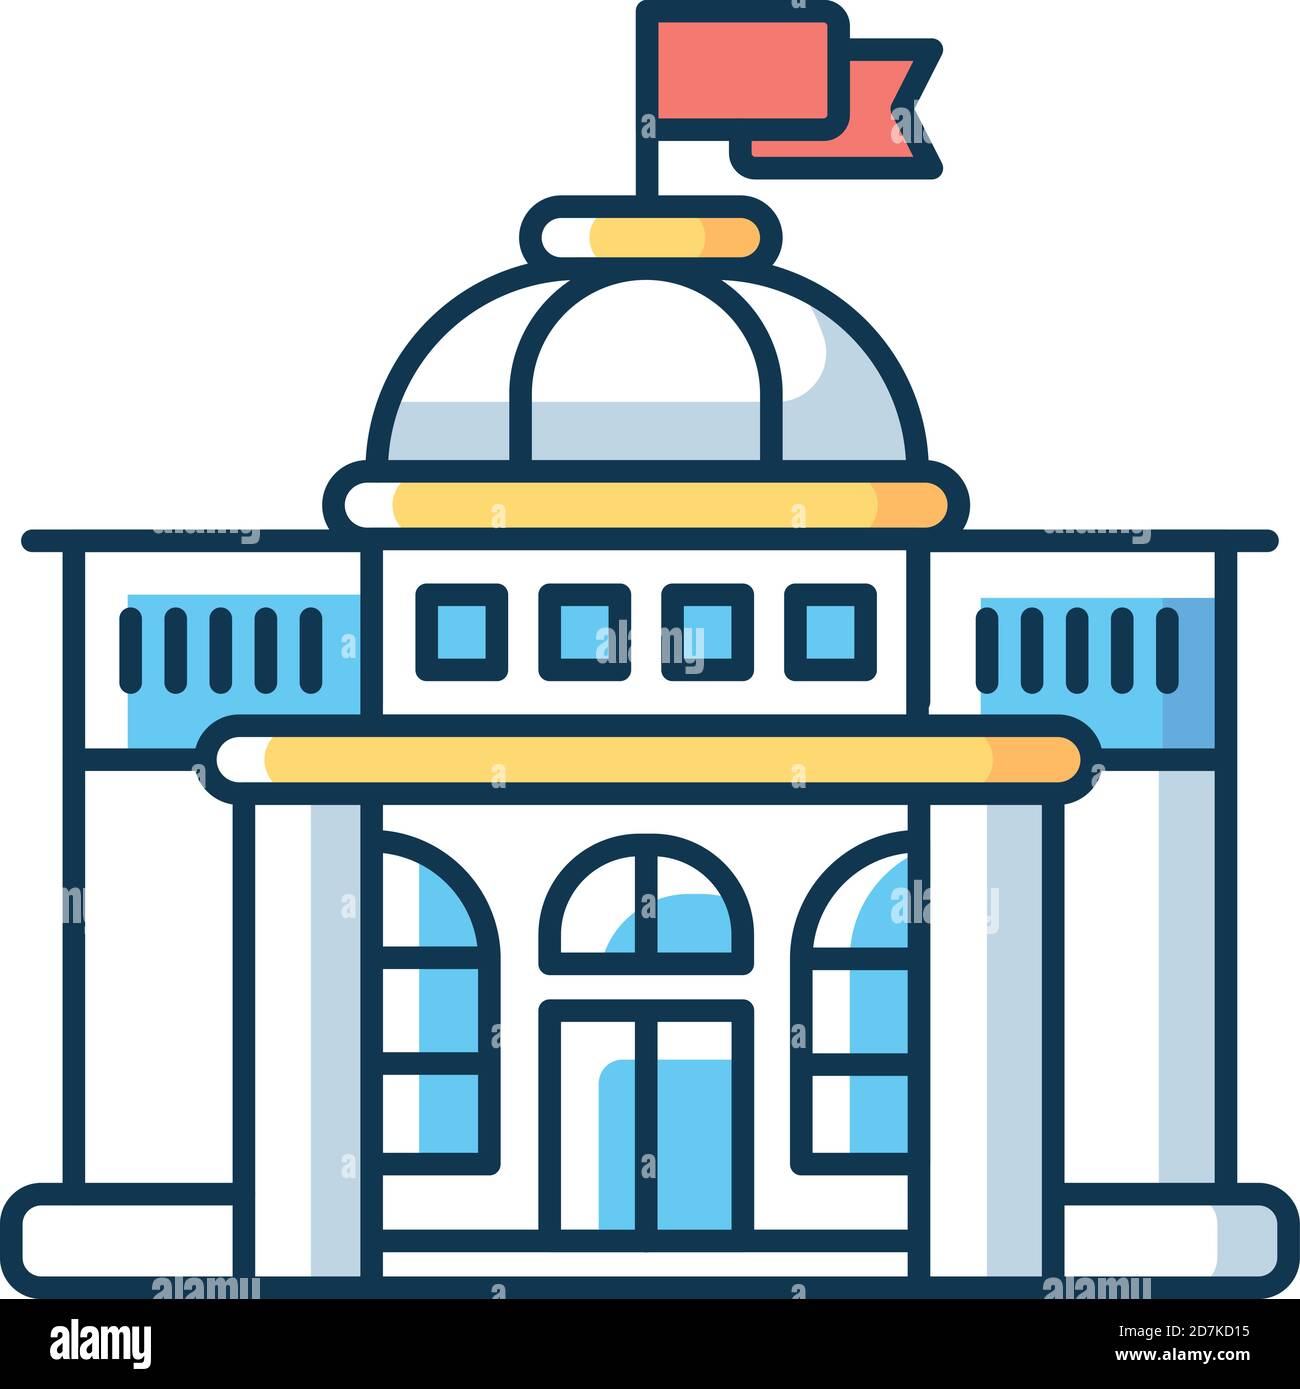 Icono de color RGB gubernamental Ilustración del Vector